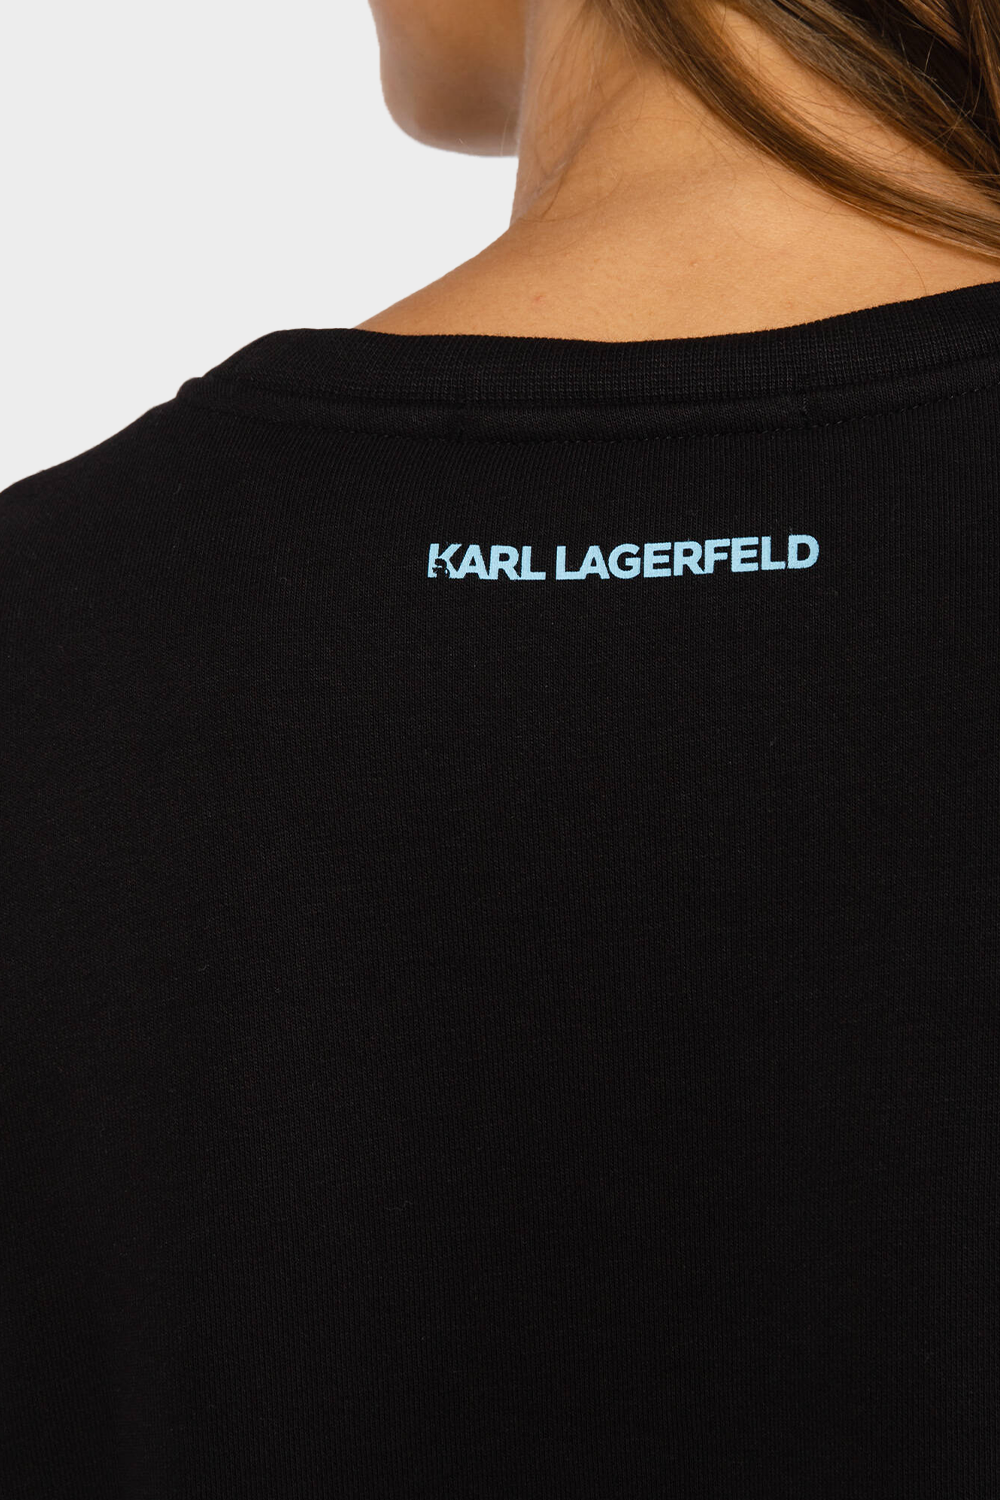 סווטשירט לנשים בצבע שחור KARL LAGERFELD Vendome online | ונדום .